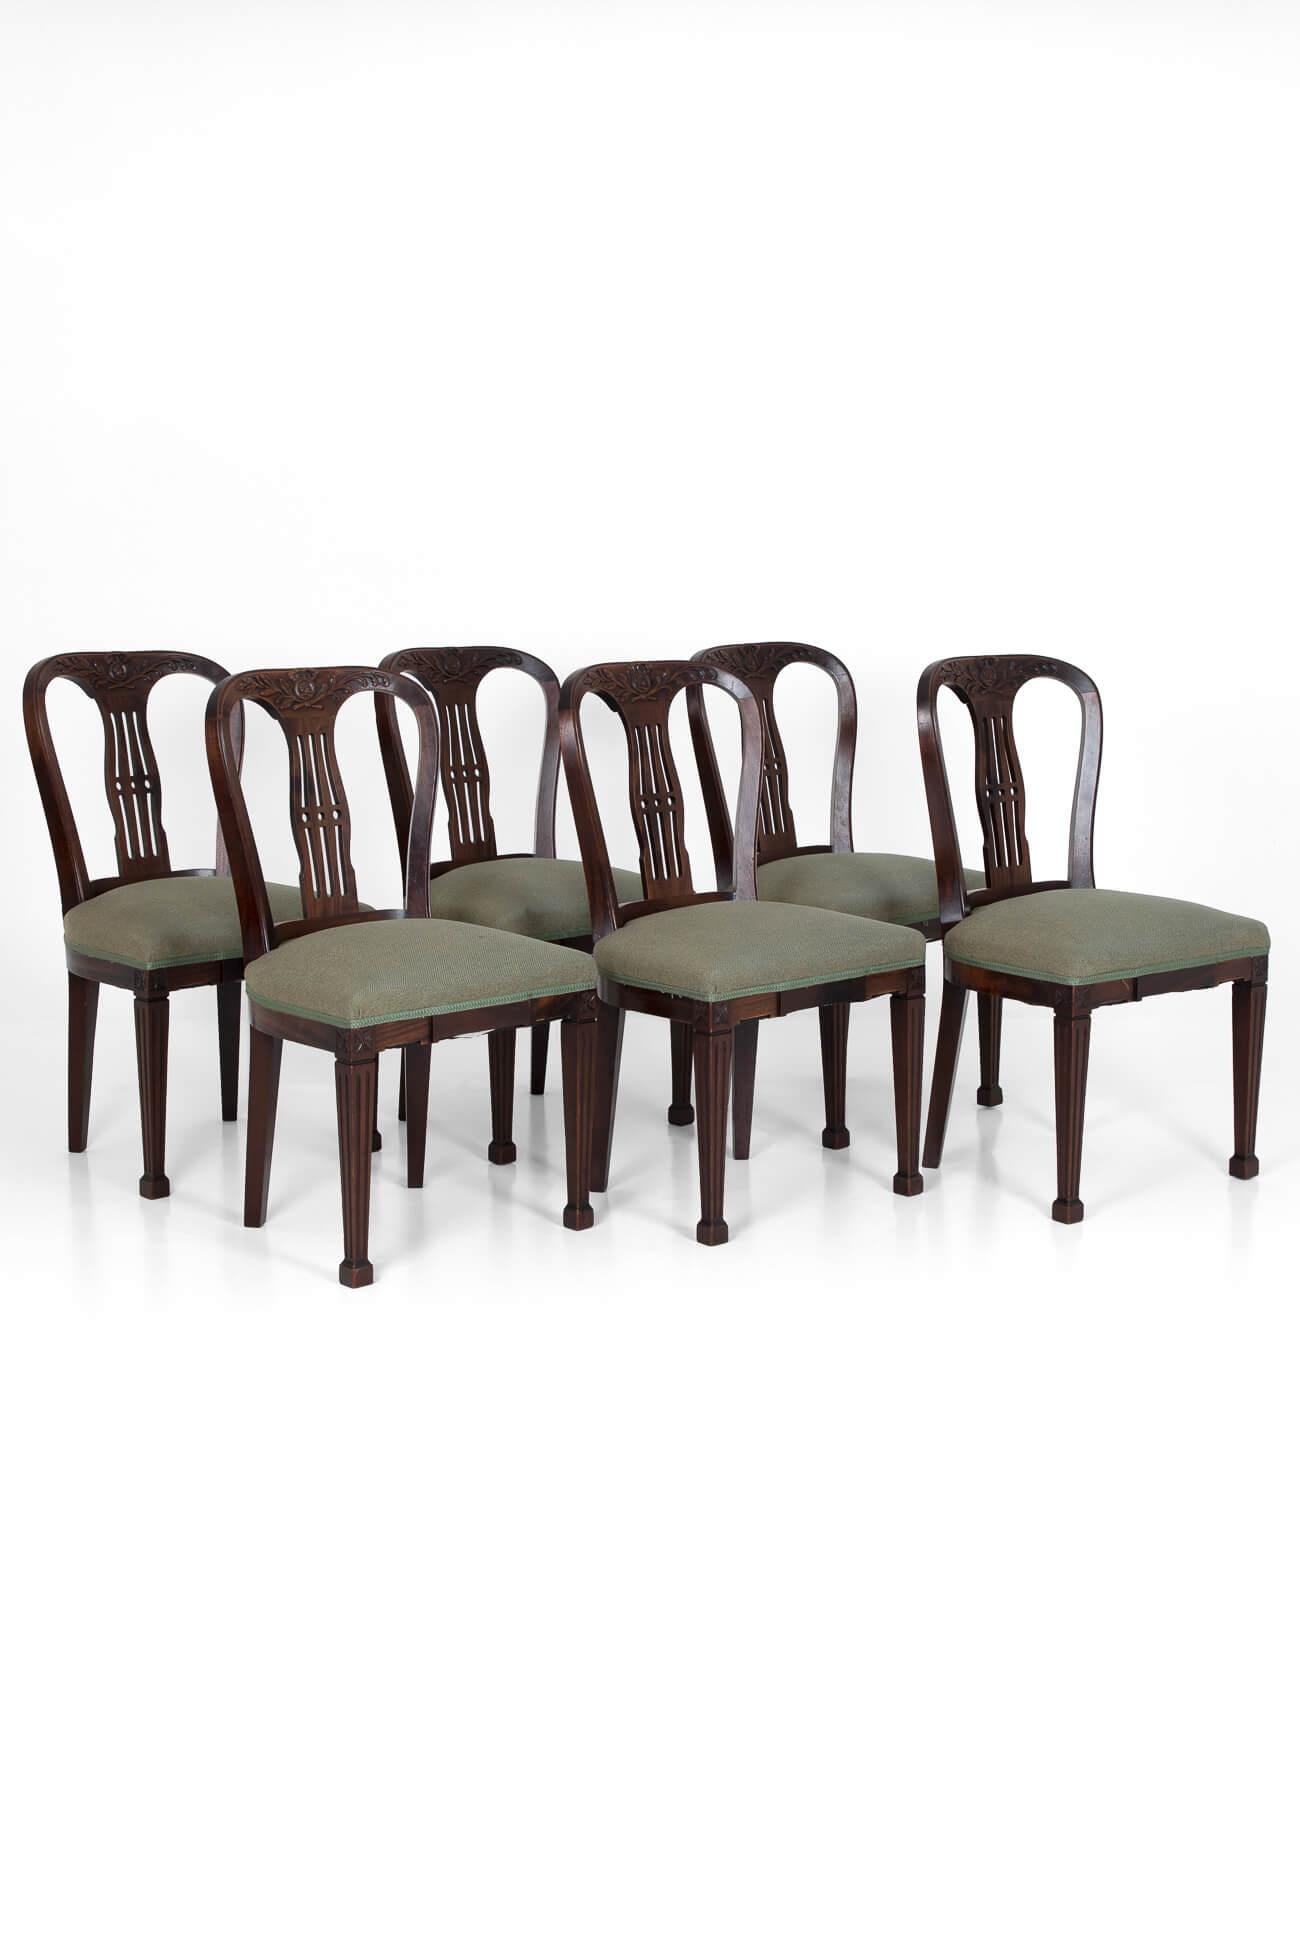 Ein Satz von sechs Mahagoni-Esszimmerstühlen aus dem 19. Jahrhundert aus einem englischen Landhaus. Außergewöhnlich gut erhalten, mit klassischen Motiven über geschnittenen Rückseiten und verjüngten Beinen auf quadratischen Füßen. Vollständig